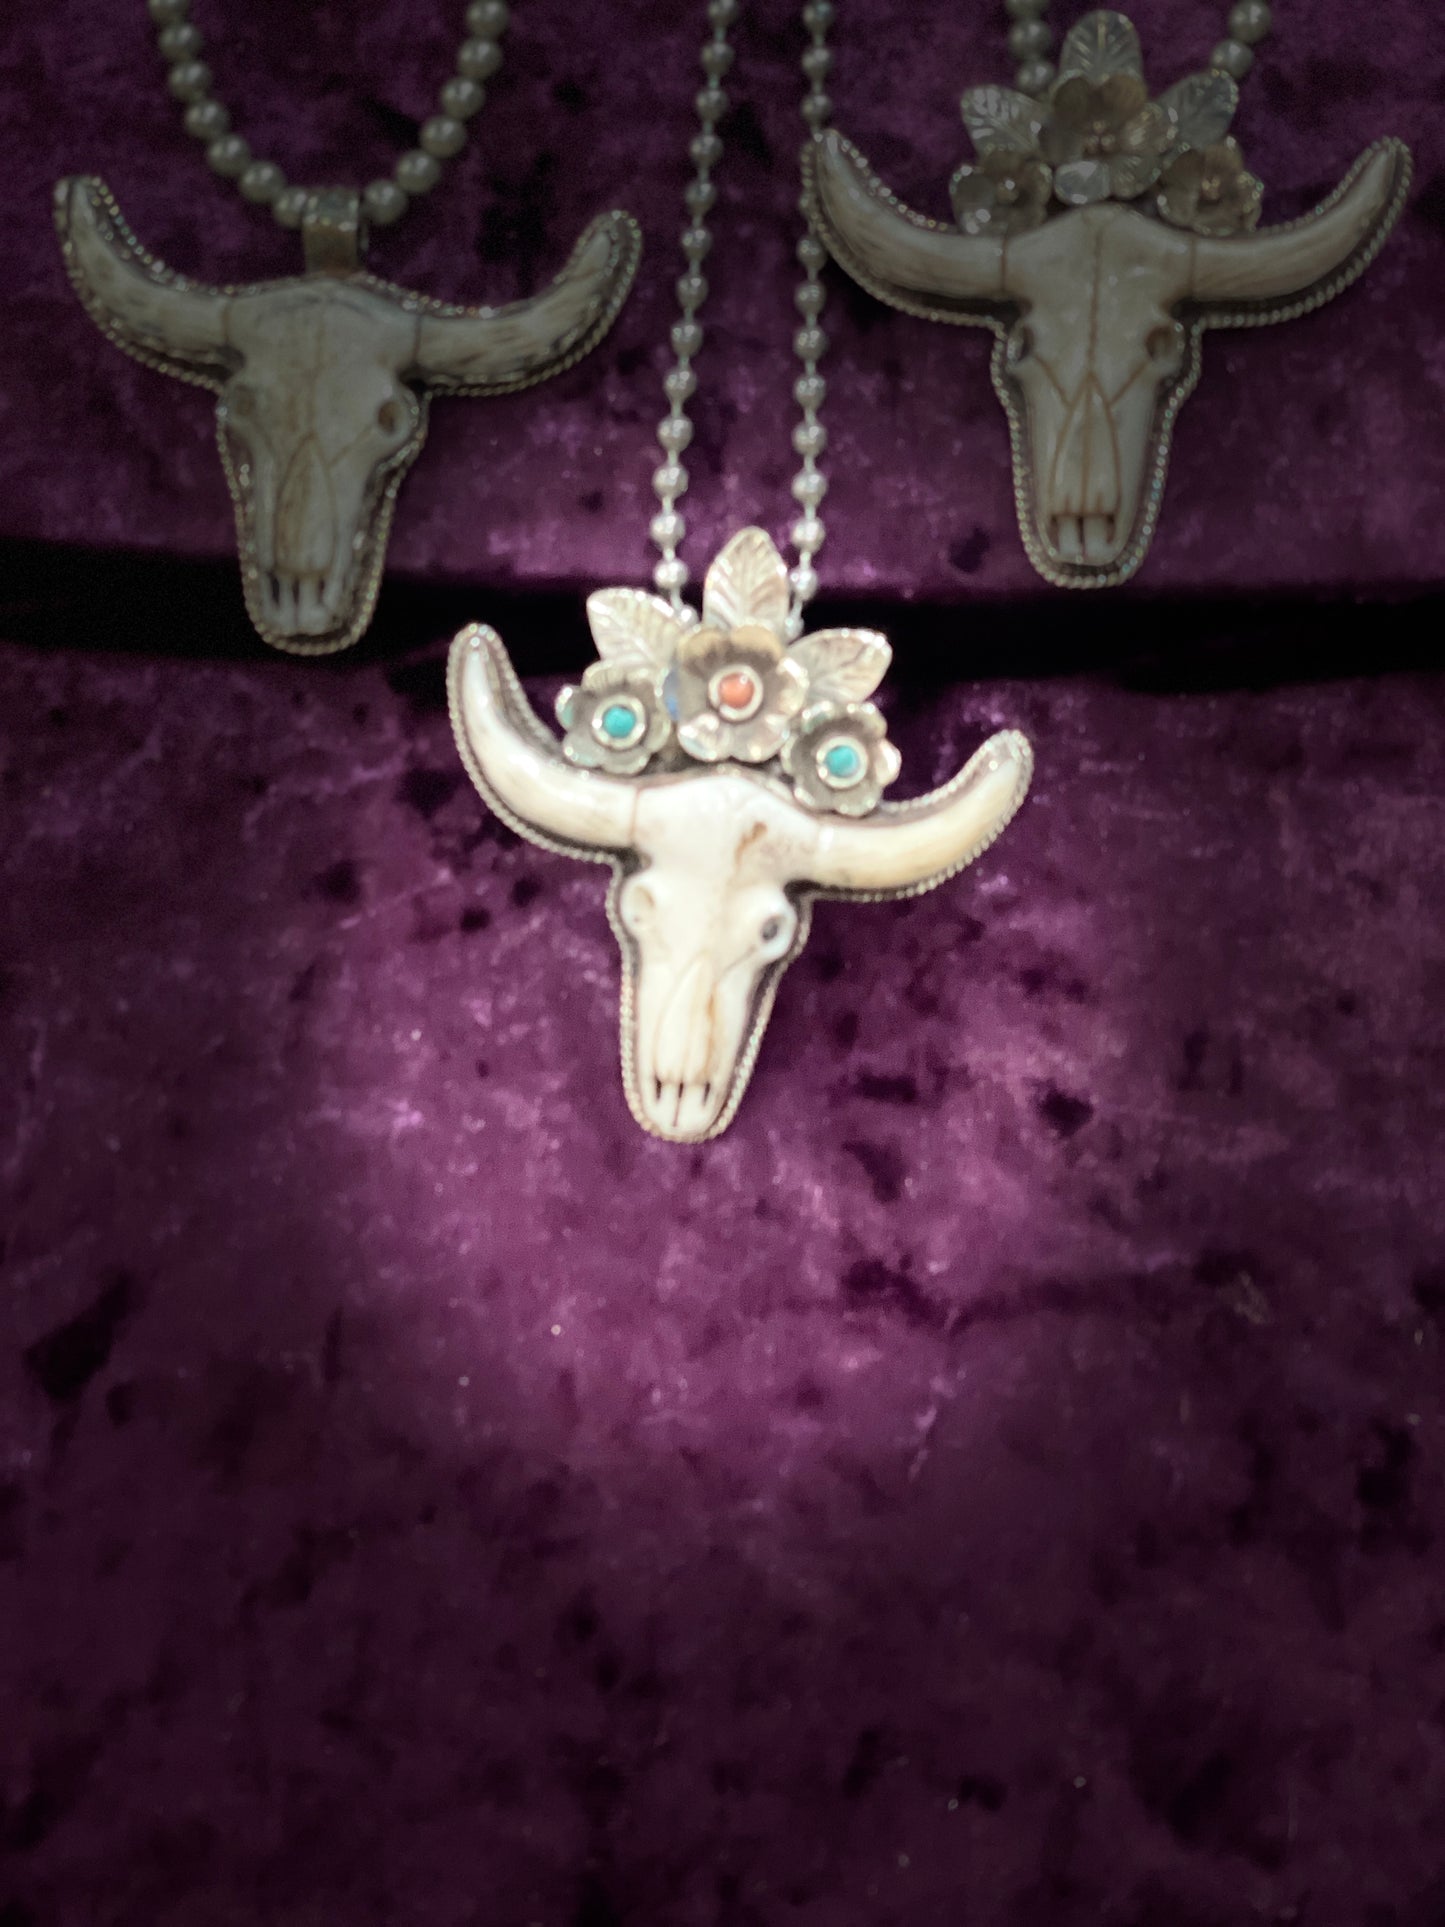 Tibetan skull pendant